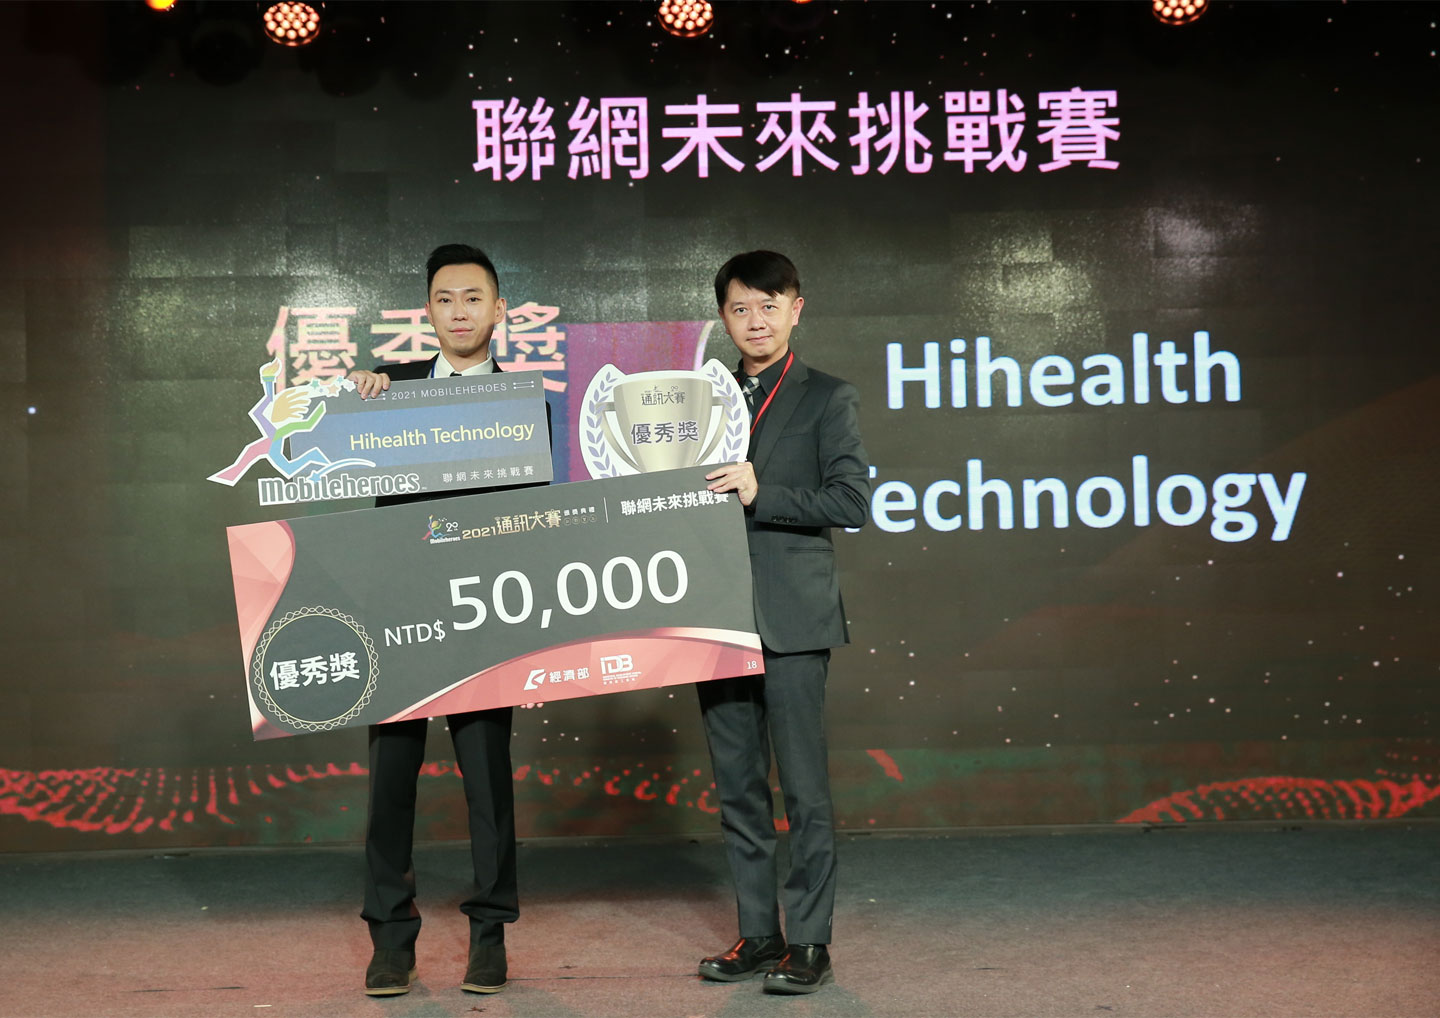 獲得 2021 通訊大賽「聯網未來挑戰賽優秀獎」的 Hihealth 團隊。